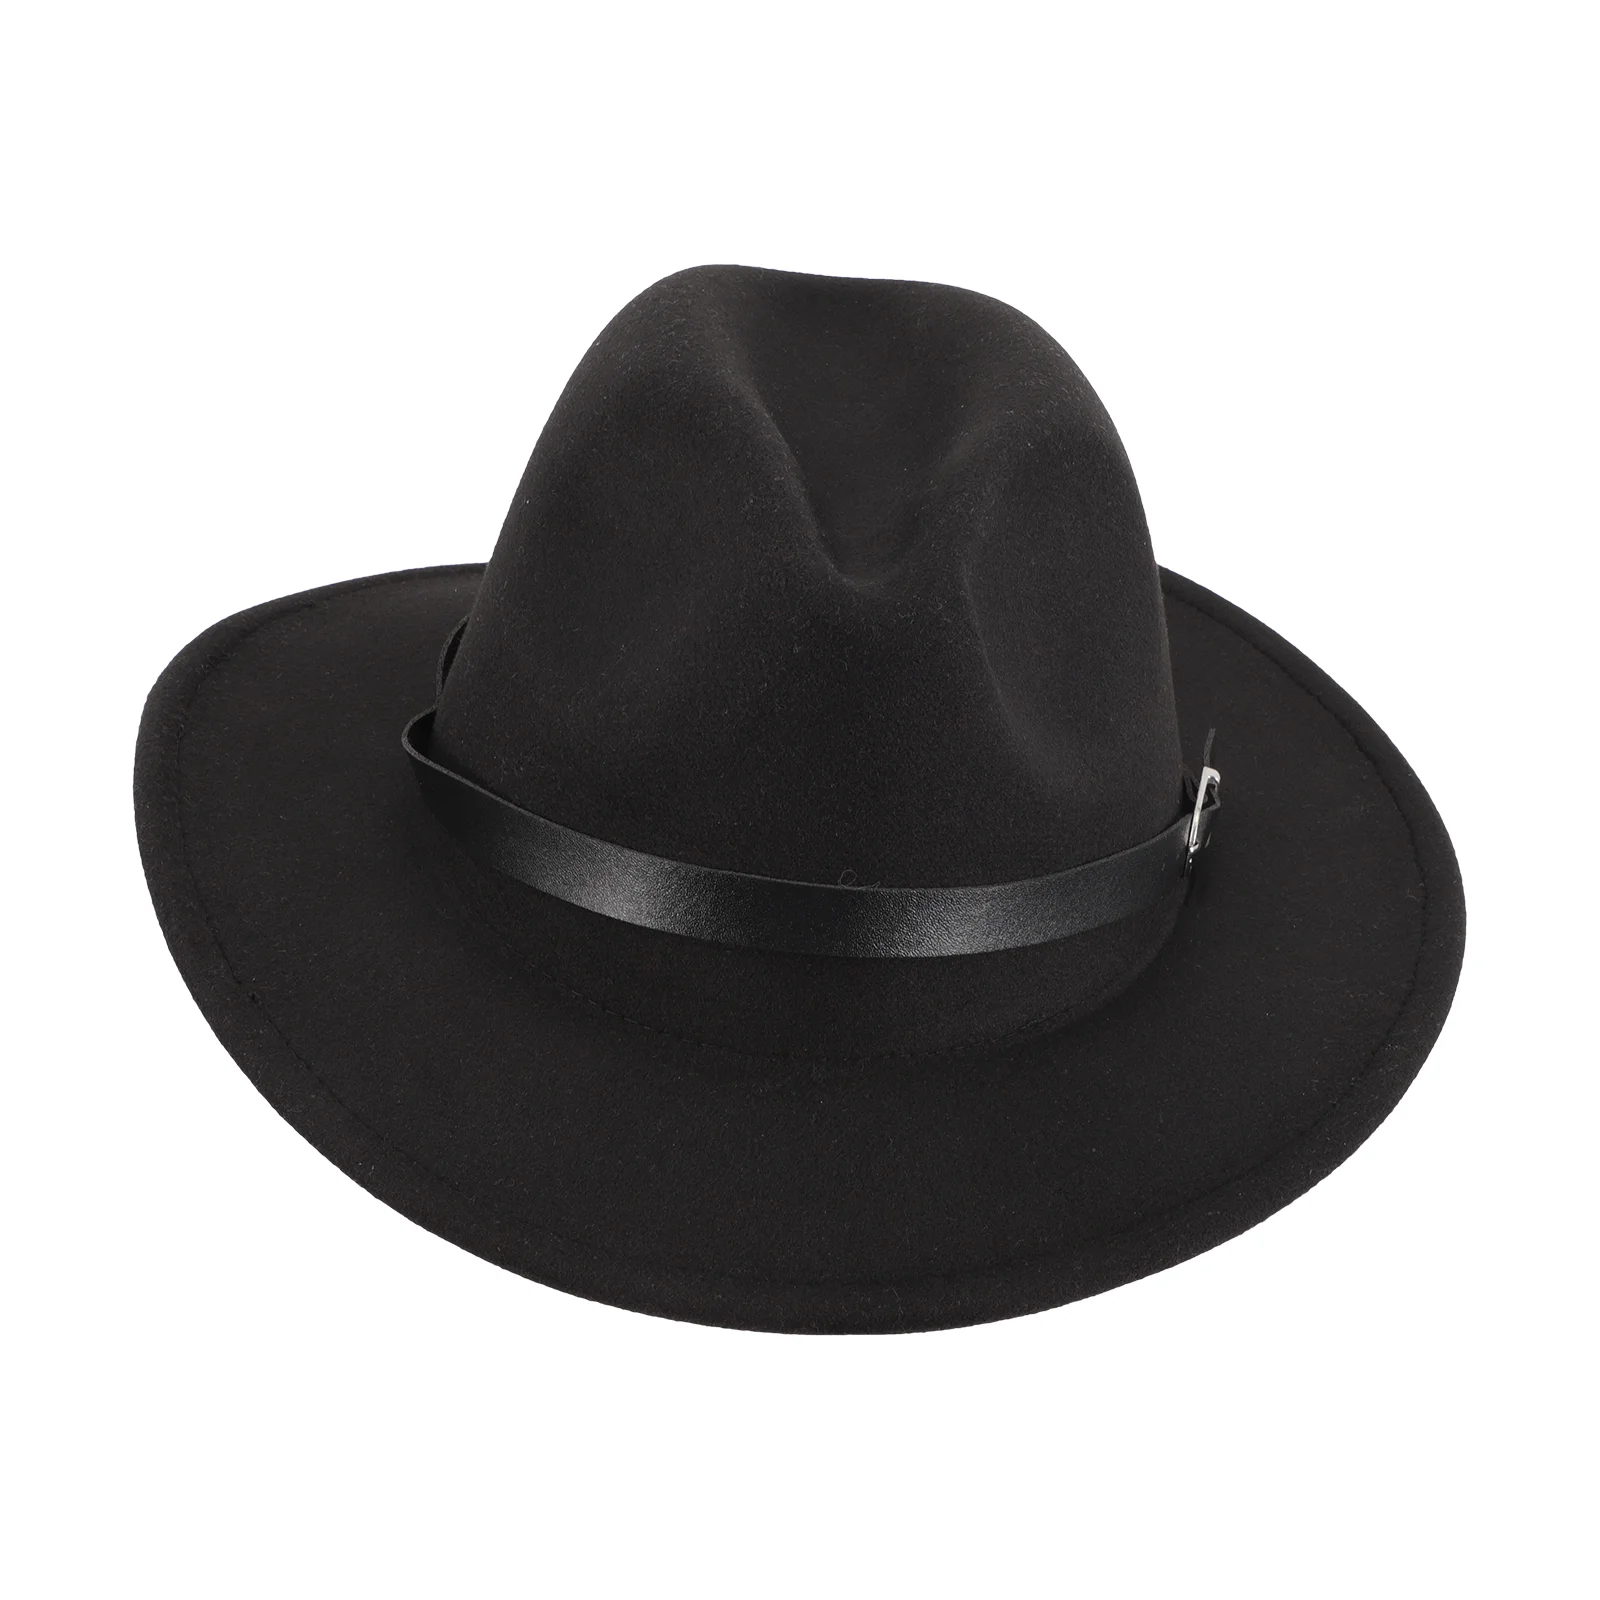 Элегантная женская мужская шляпа Fedora шерстяная шляпа с широкими полями Декоративная шляпа для вечеринок Fedora